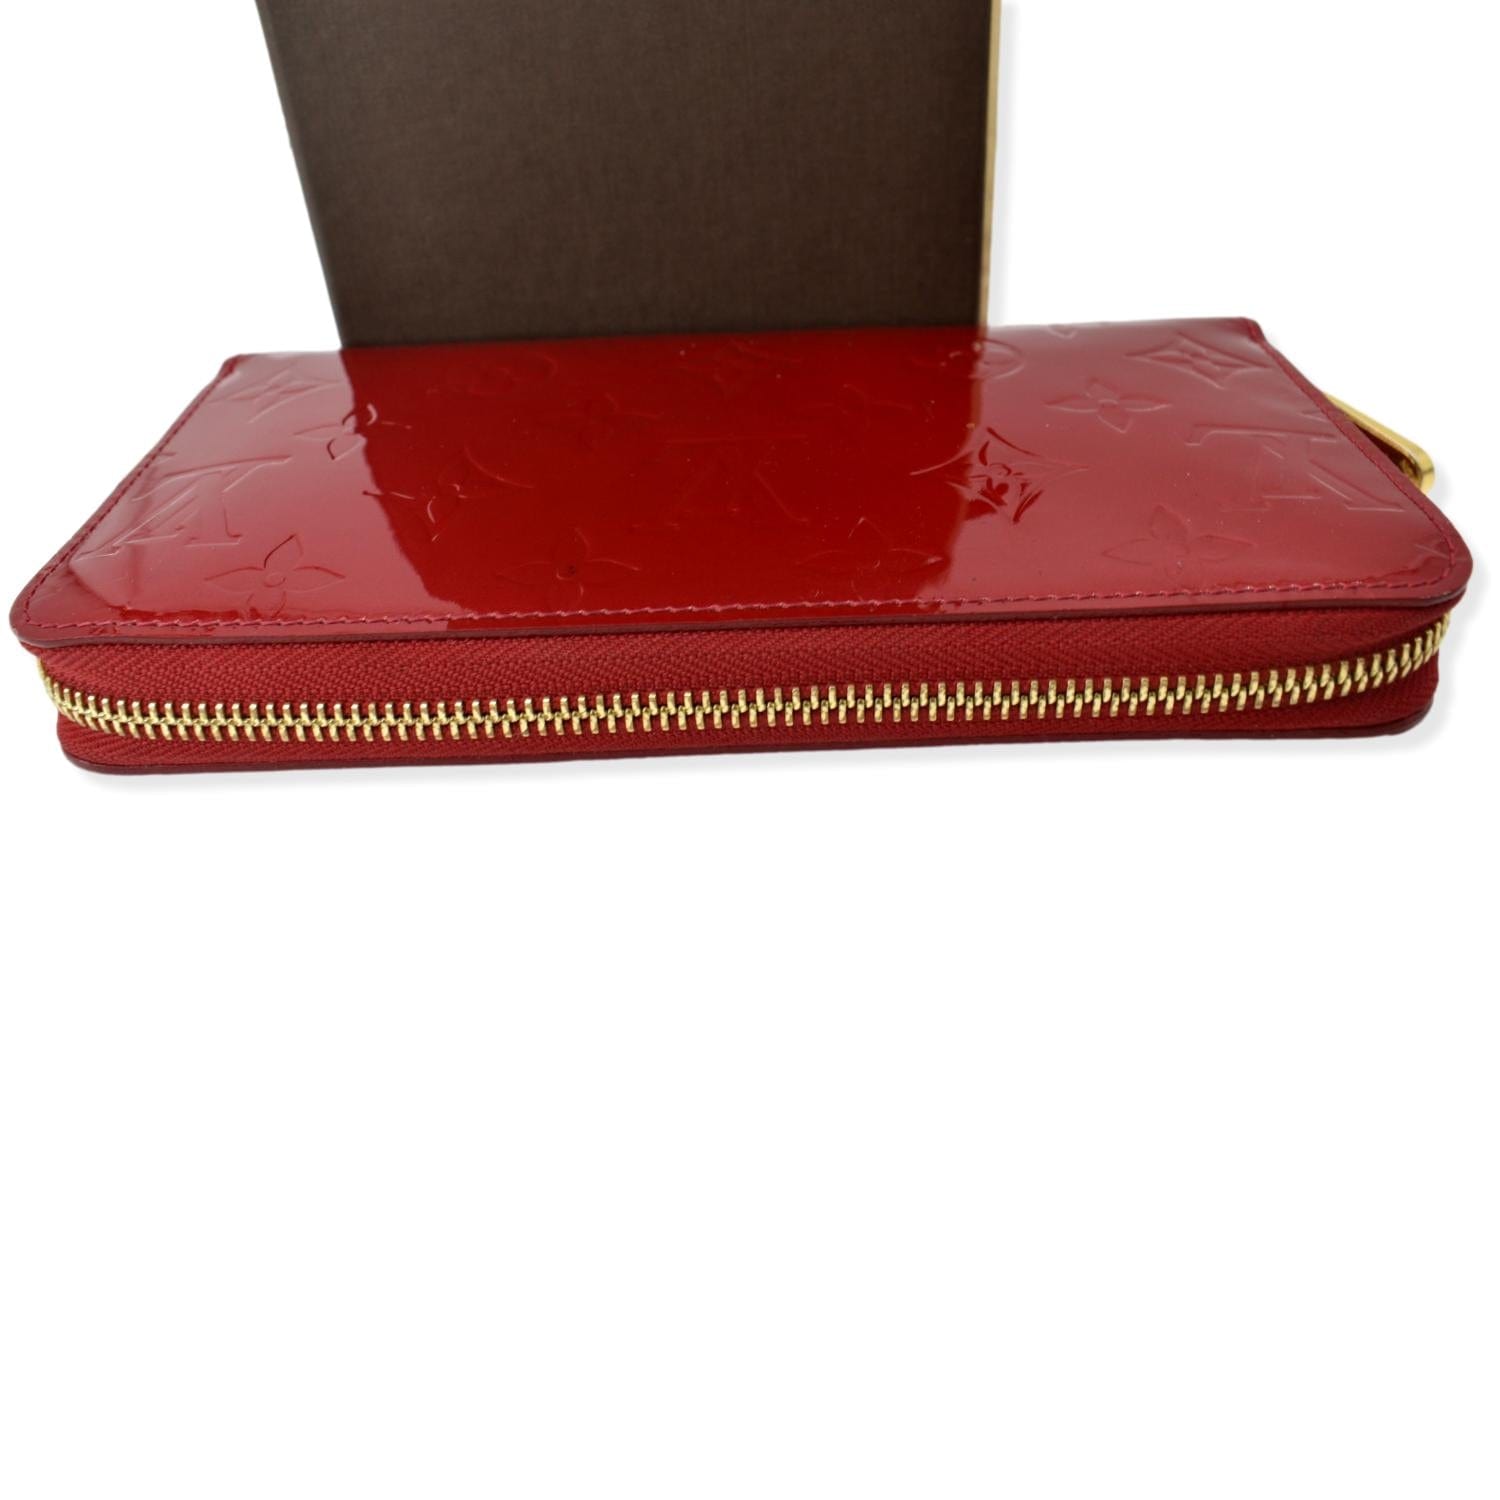 Louis Vuitton Zippy Patent Leather Wallet